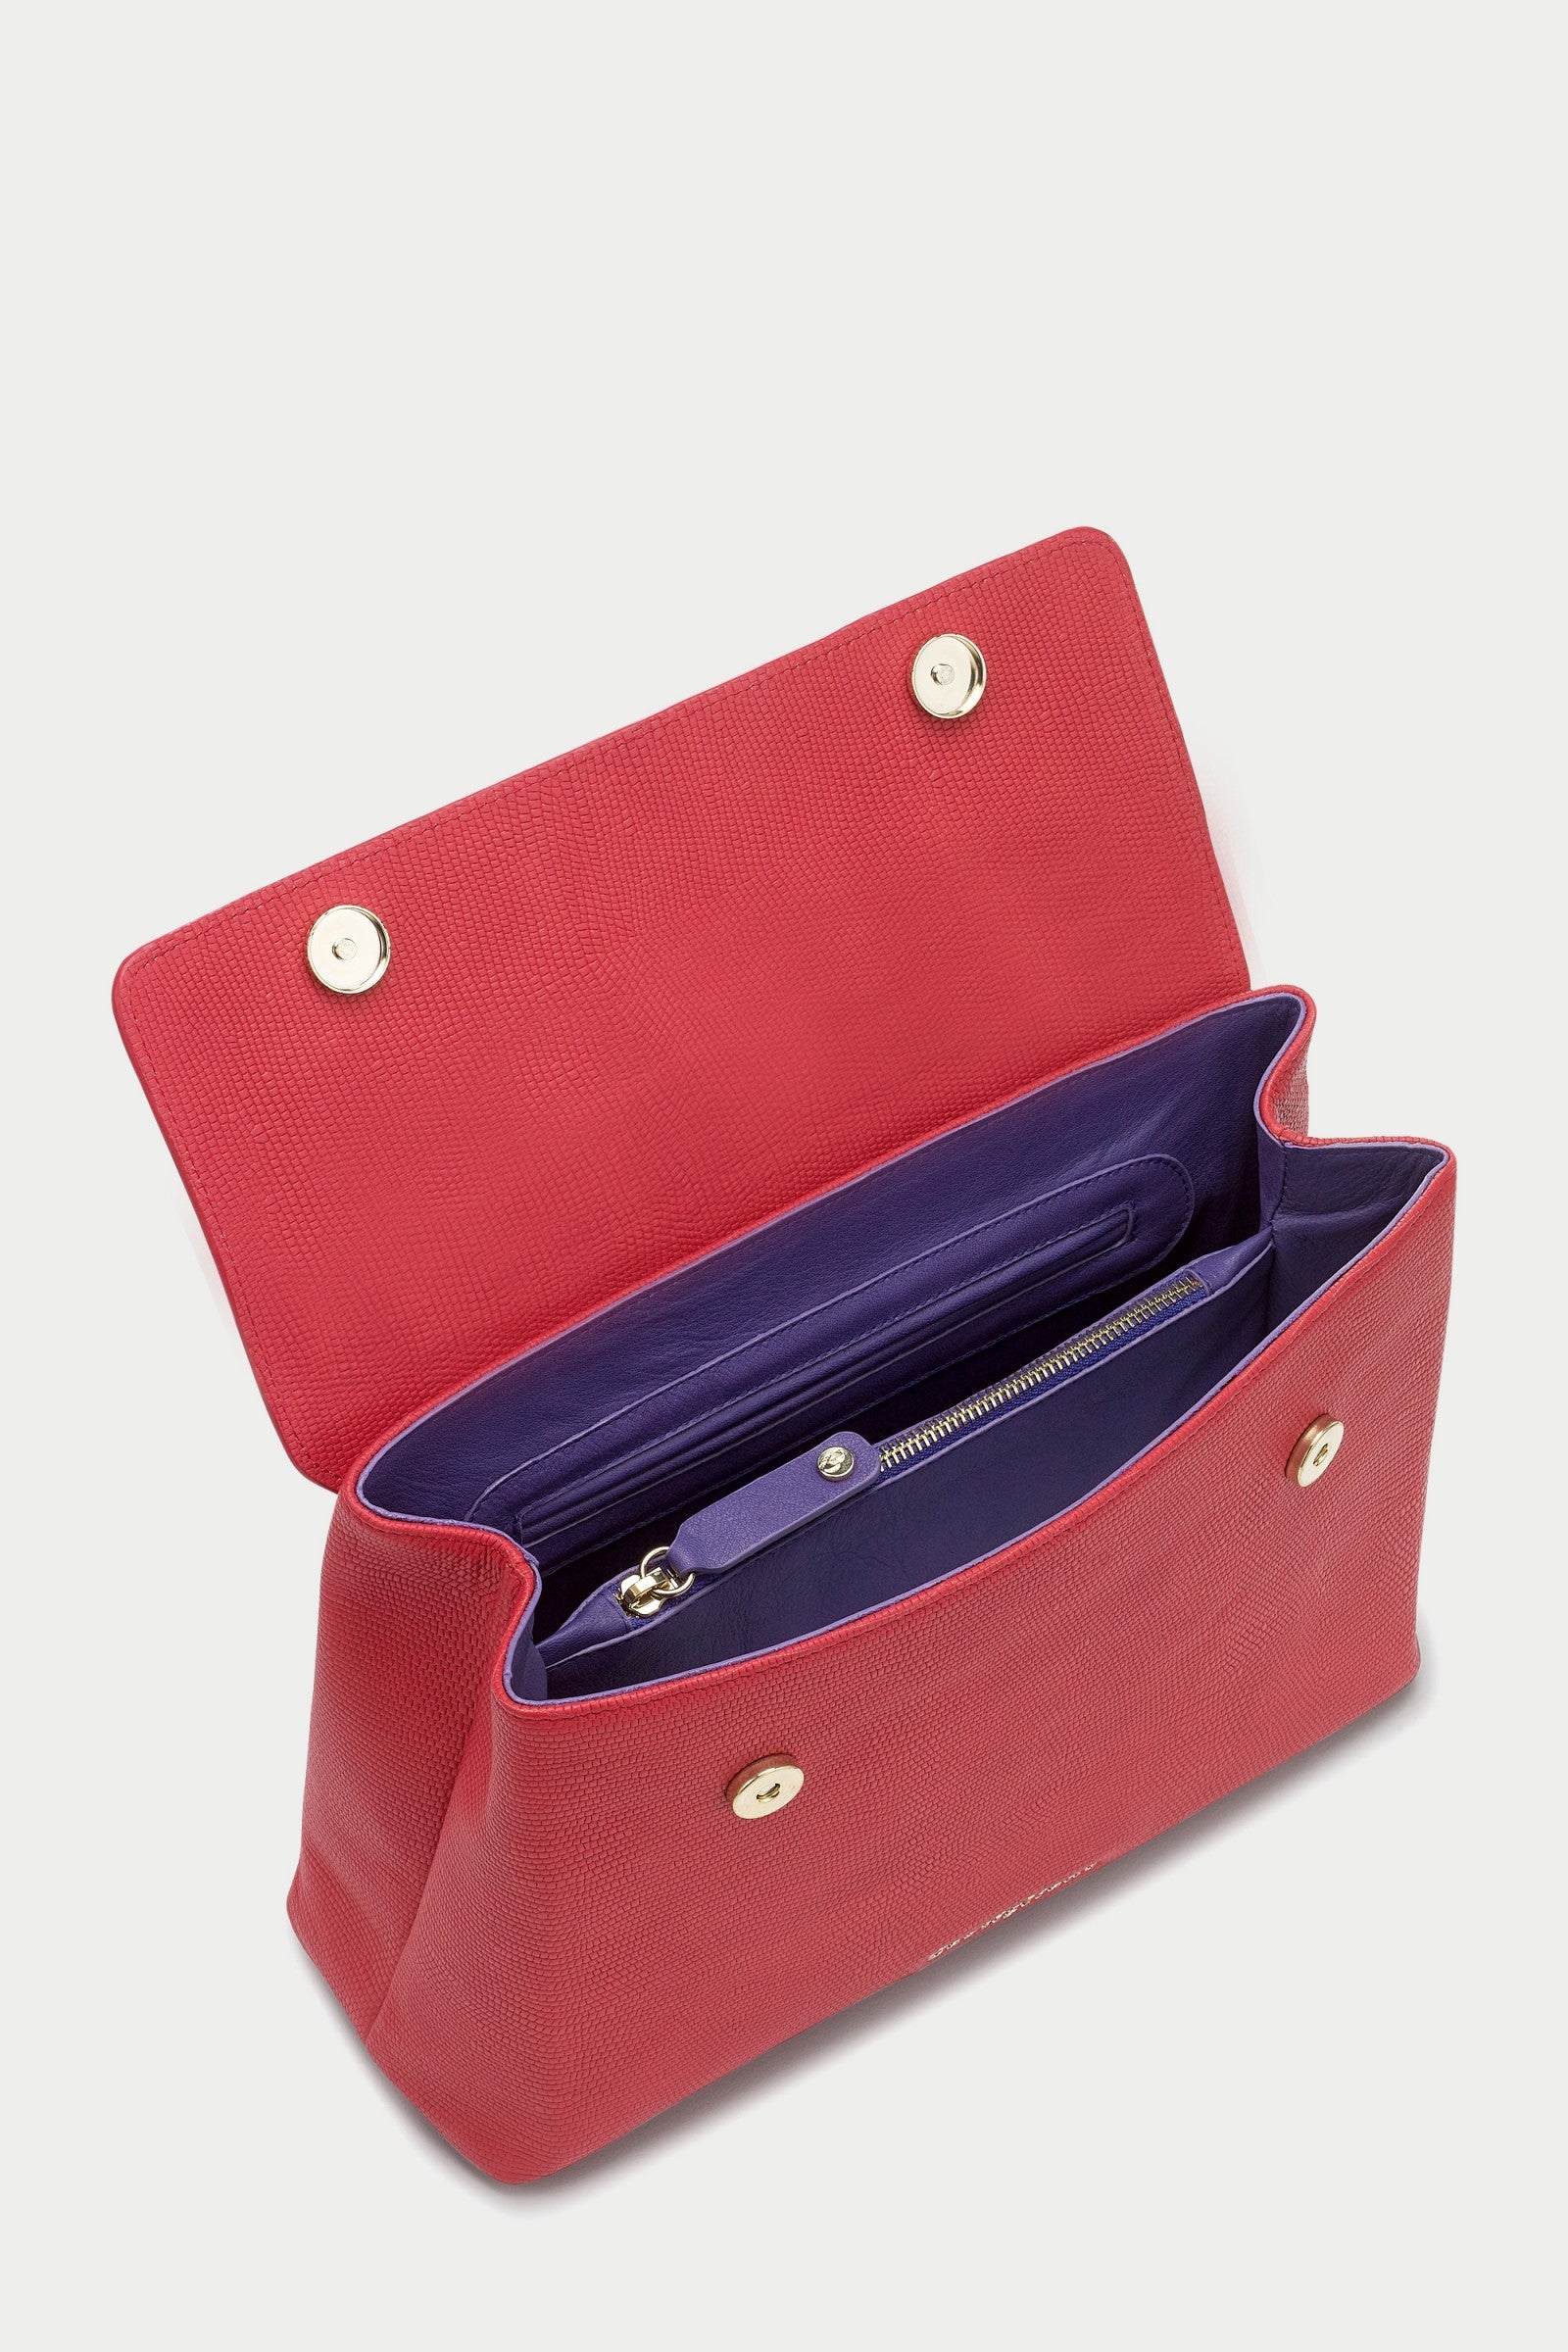 Briella ANACONDA LIPSTICK Red Leather Handbag